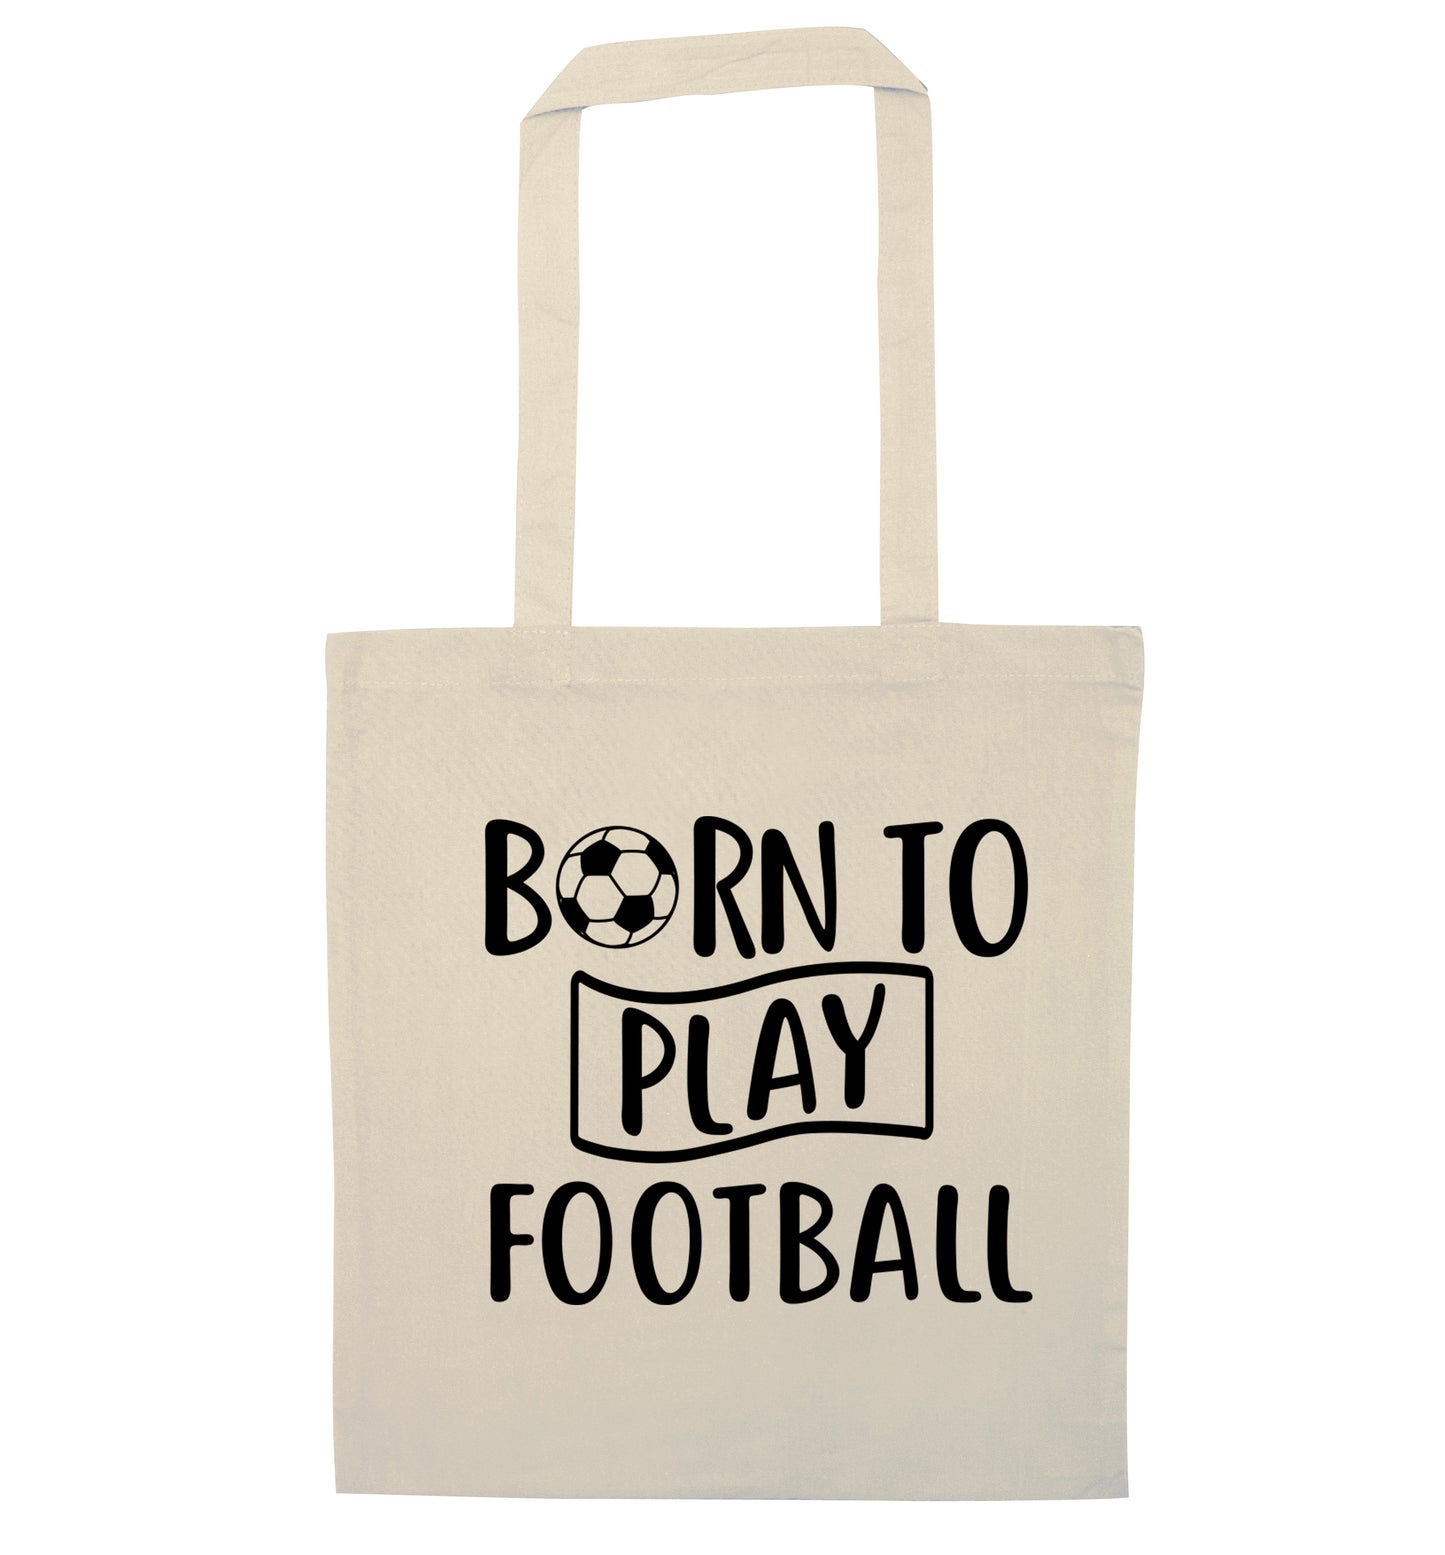 Born to play football natural tote bag